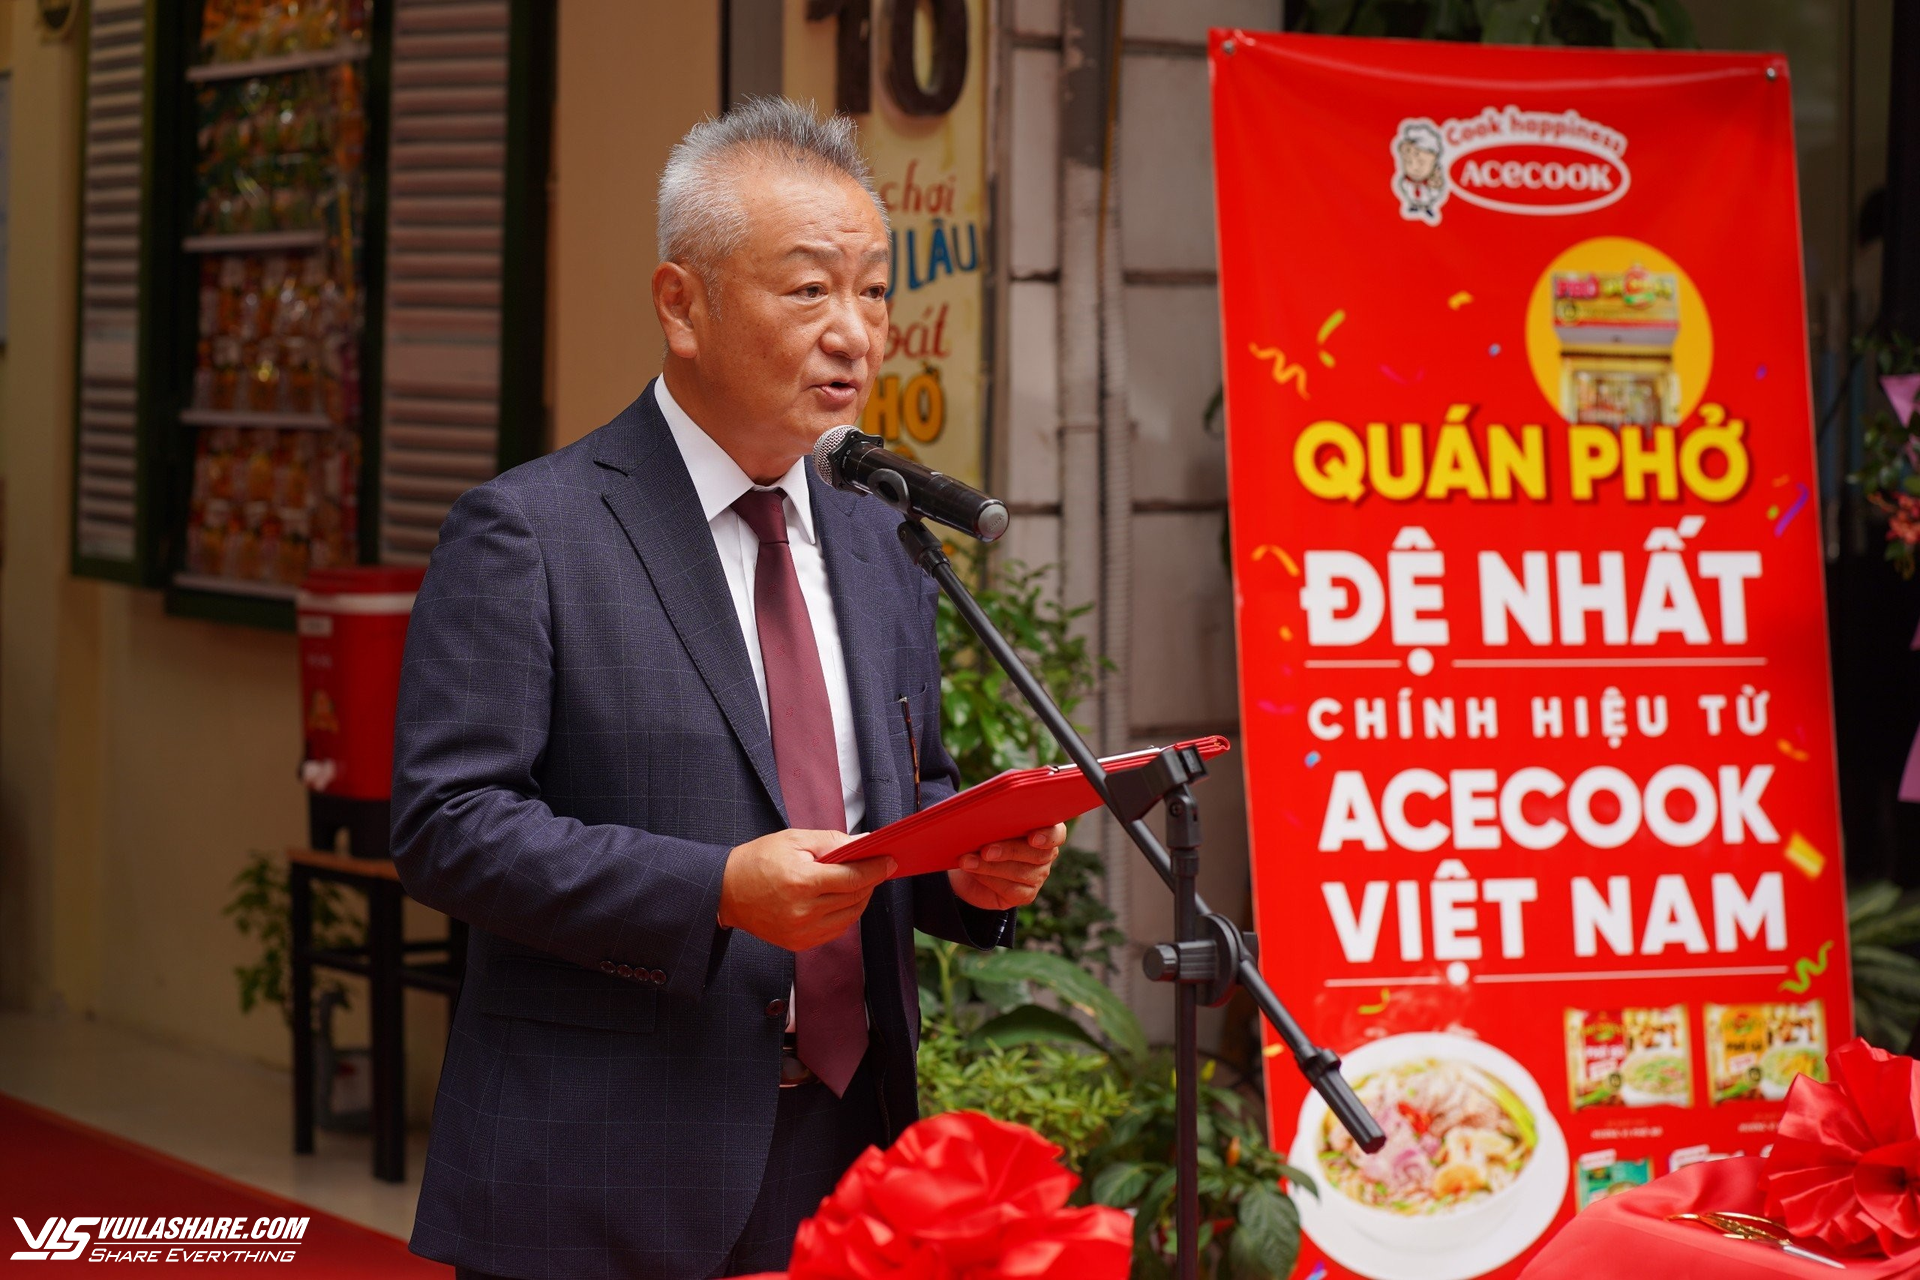 Acecook Việt Nam khai trương quán phở ăn liền đệ nhất tại Hà Nội - Ảnh 1.